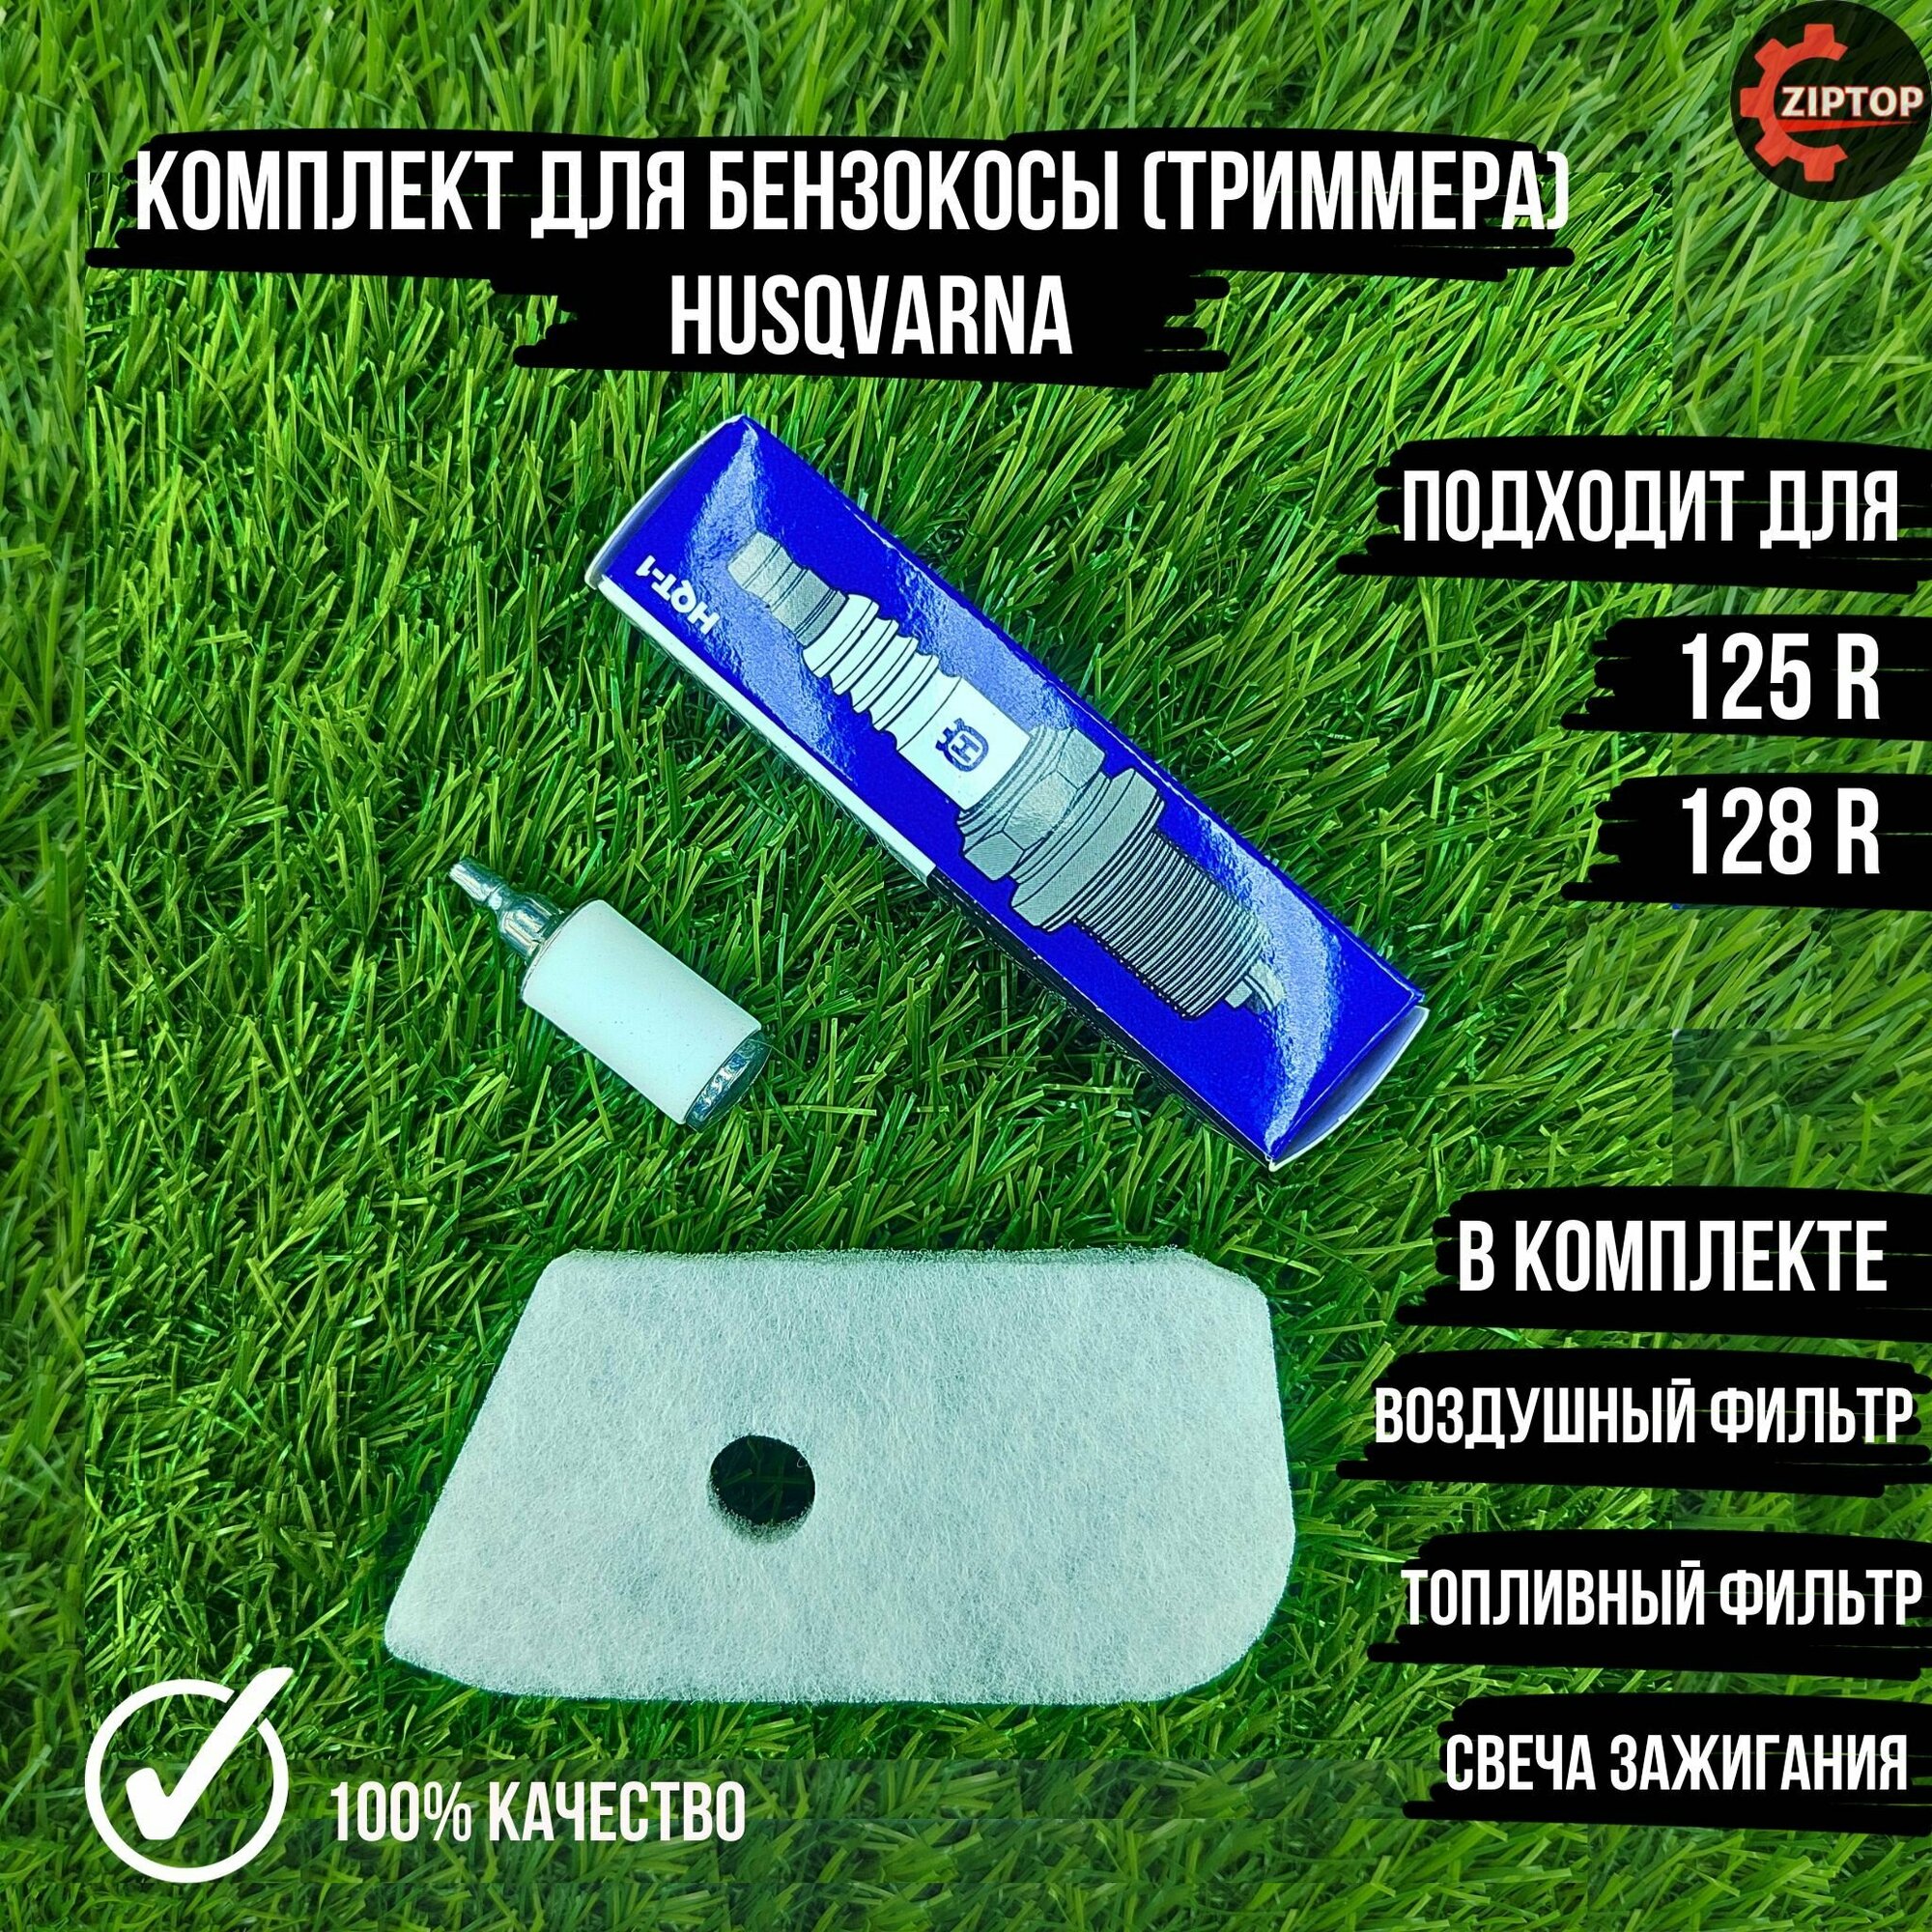 Комплект для бензокосы (триммера) Хускварна Husqvarna 125R 128R (Воздушный фильтр топливный фильтр свеча зажигания)